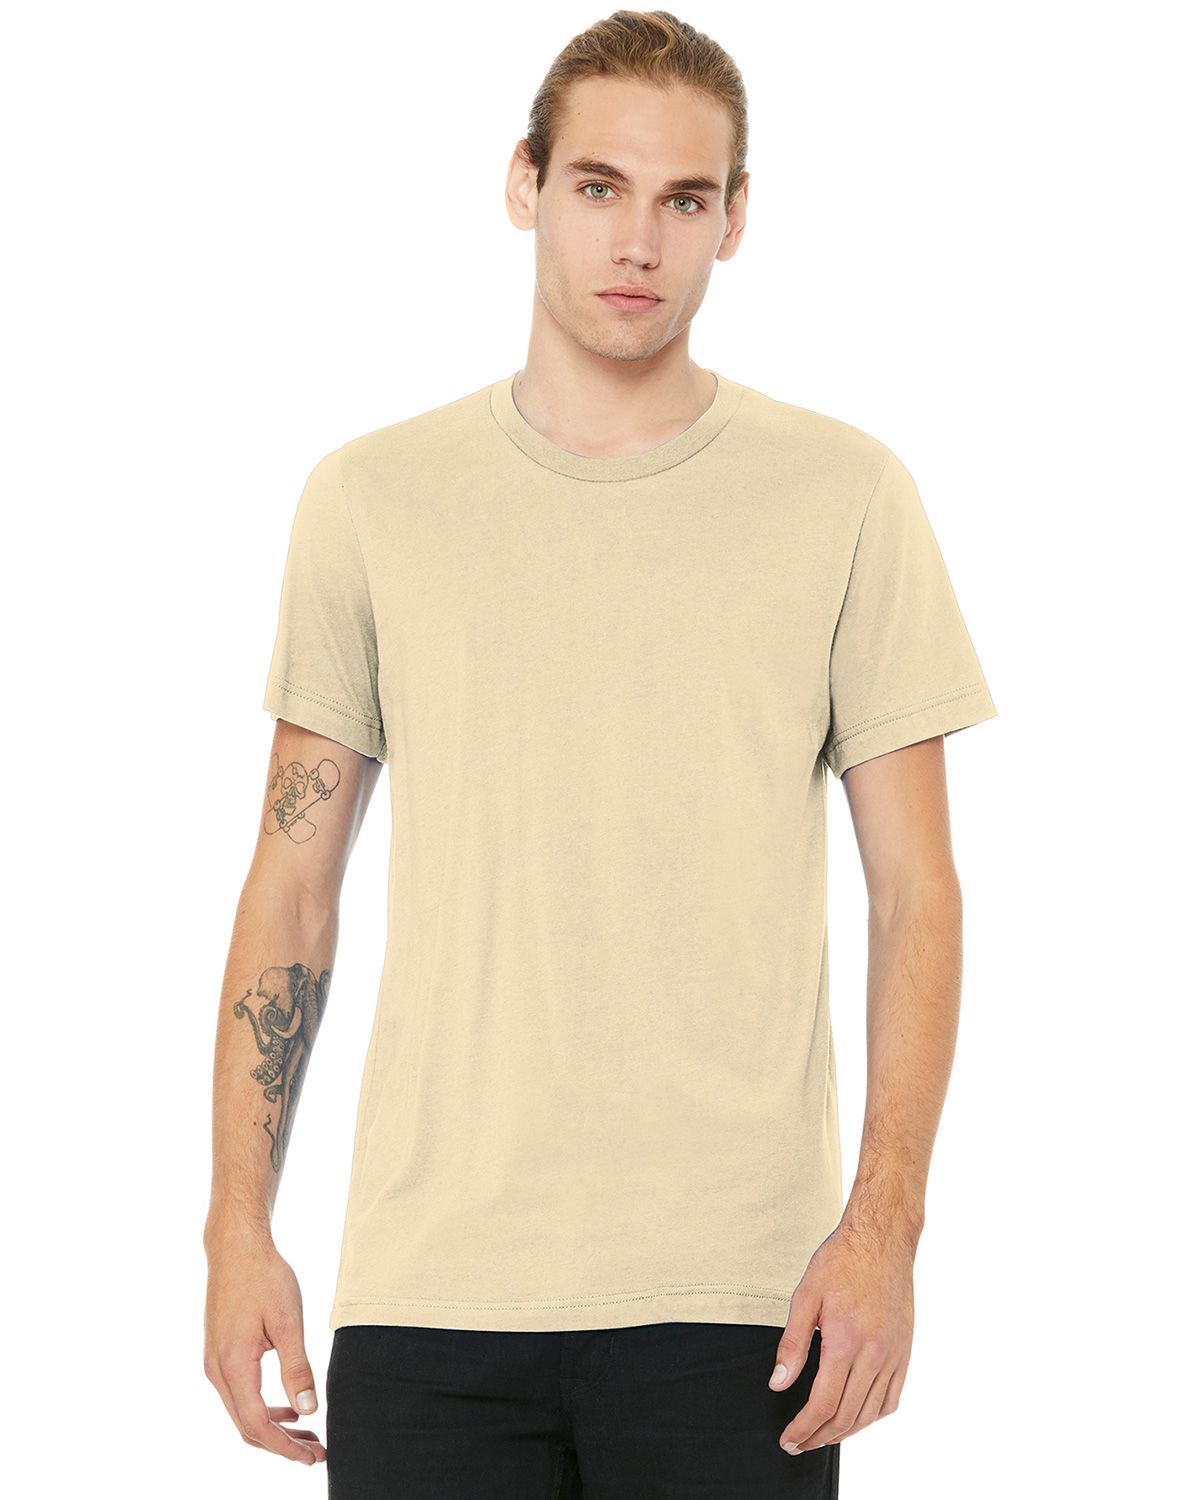 Bella Canvas Men's Jersey Short-Sleeve Ringer T-Shirt S DEEP